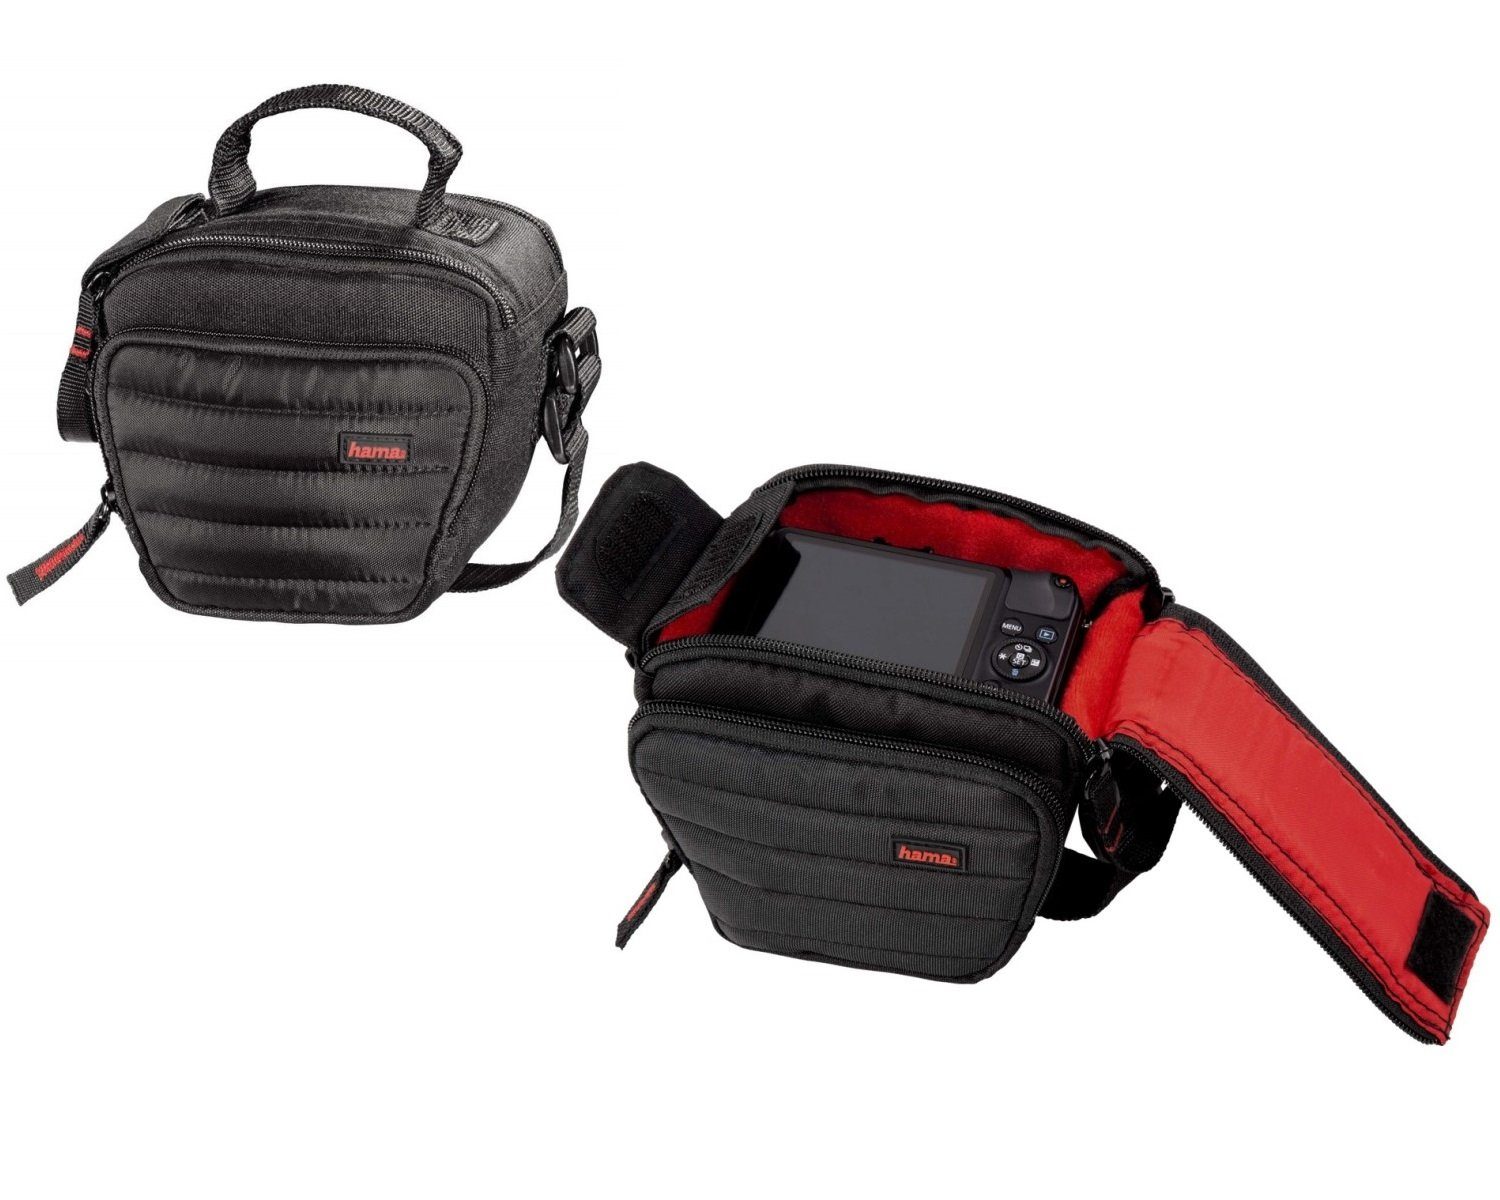 Damen Alle Damentaschen Hama Kameratasche Kamera-Tasche Colt Universal Case Hülle, Passend für Systemkamera Bridge-Kamera, Innen